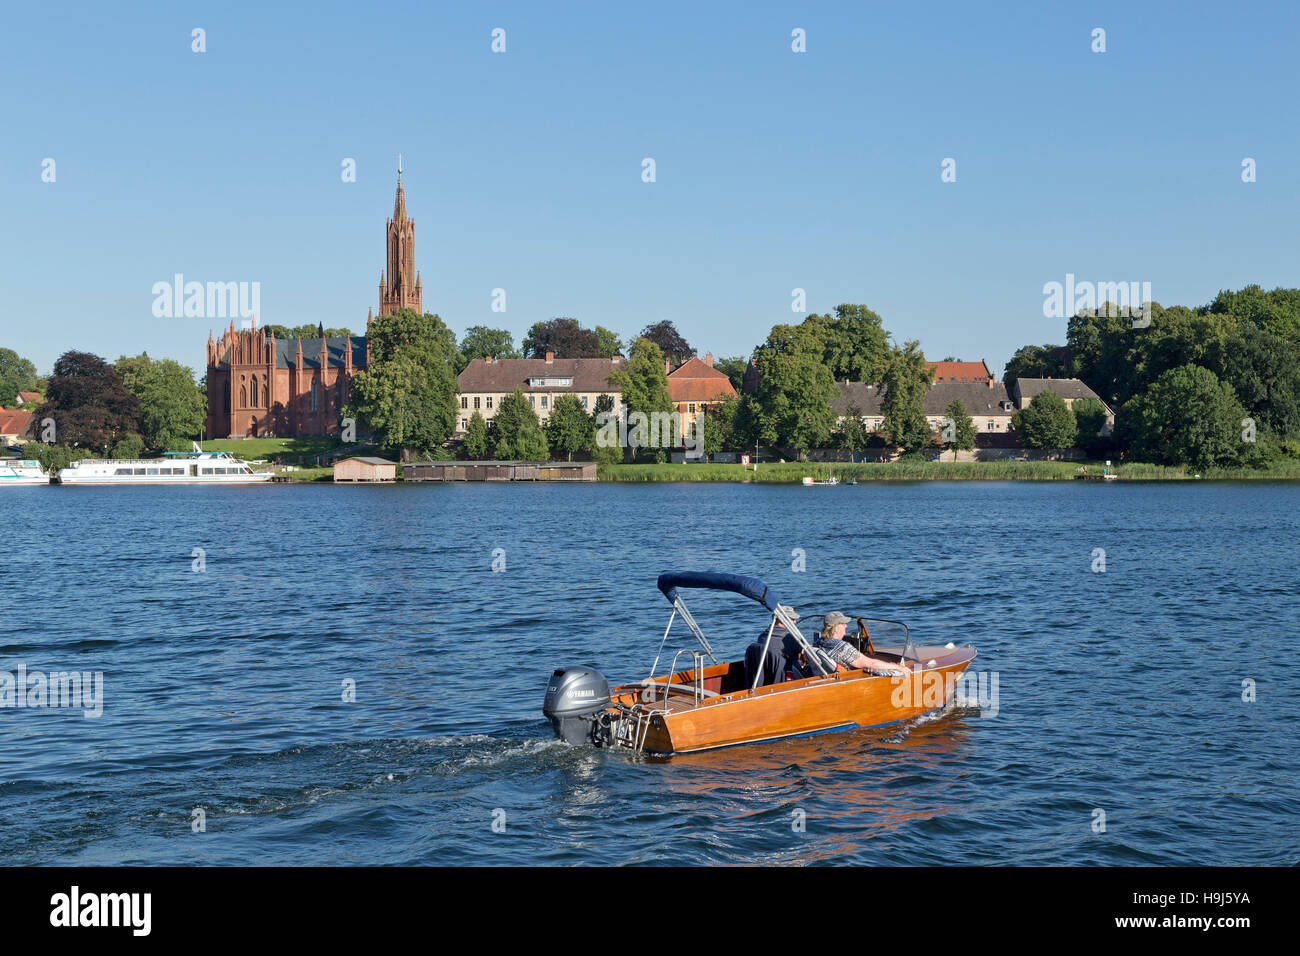 L'église et de l'lake, Malchow, lacs de Mecklembourg, Schleswig-Holstein, Allemagne Banque D'Images